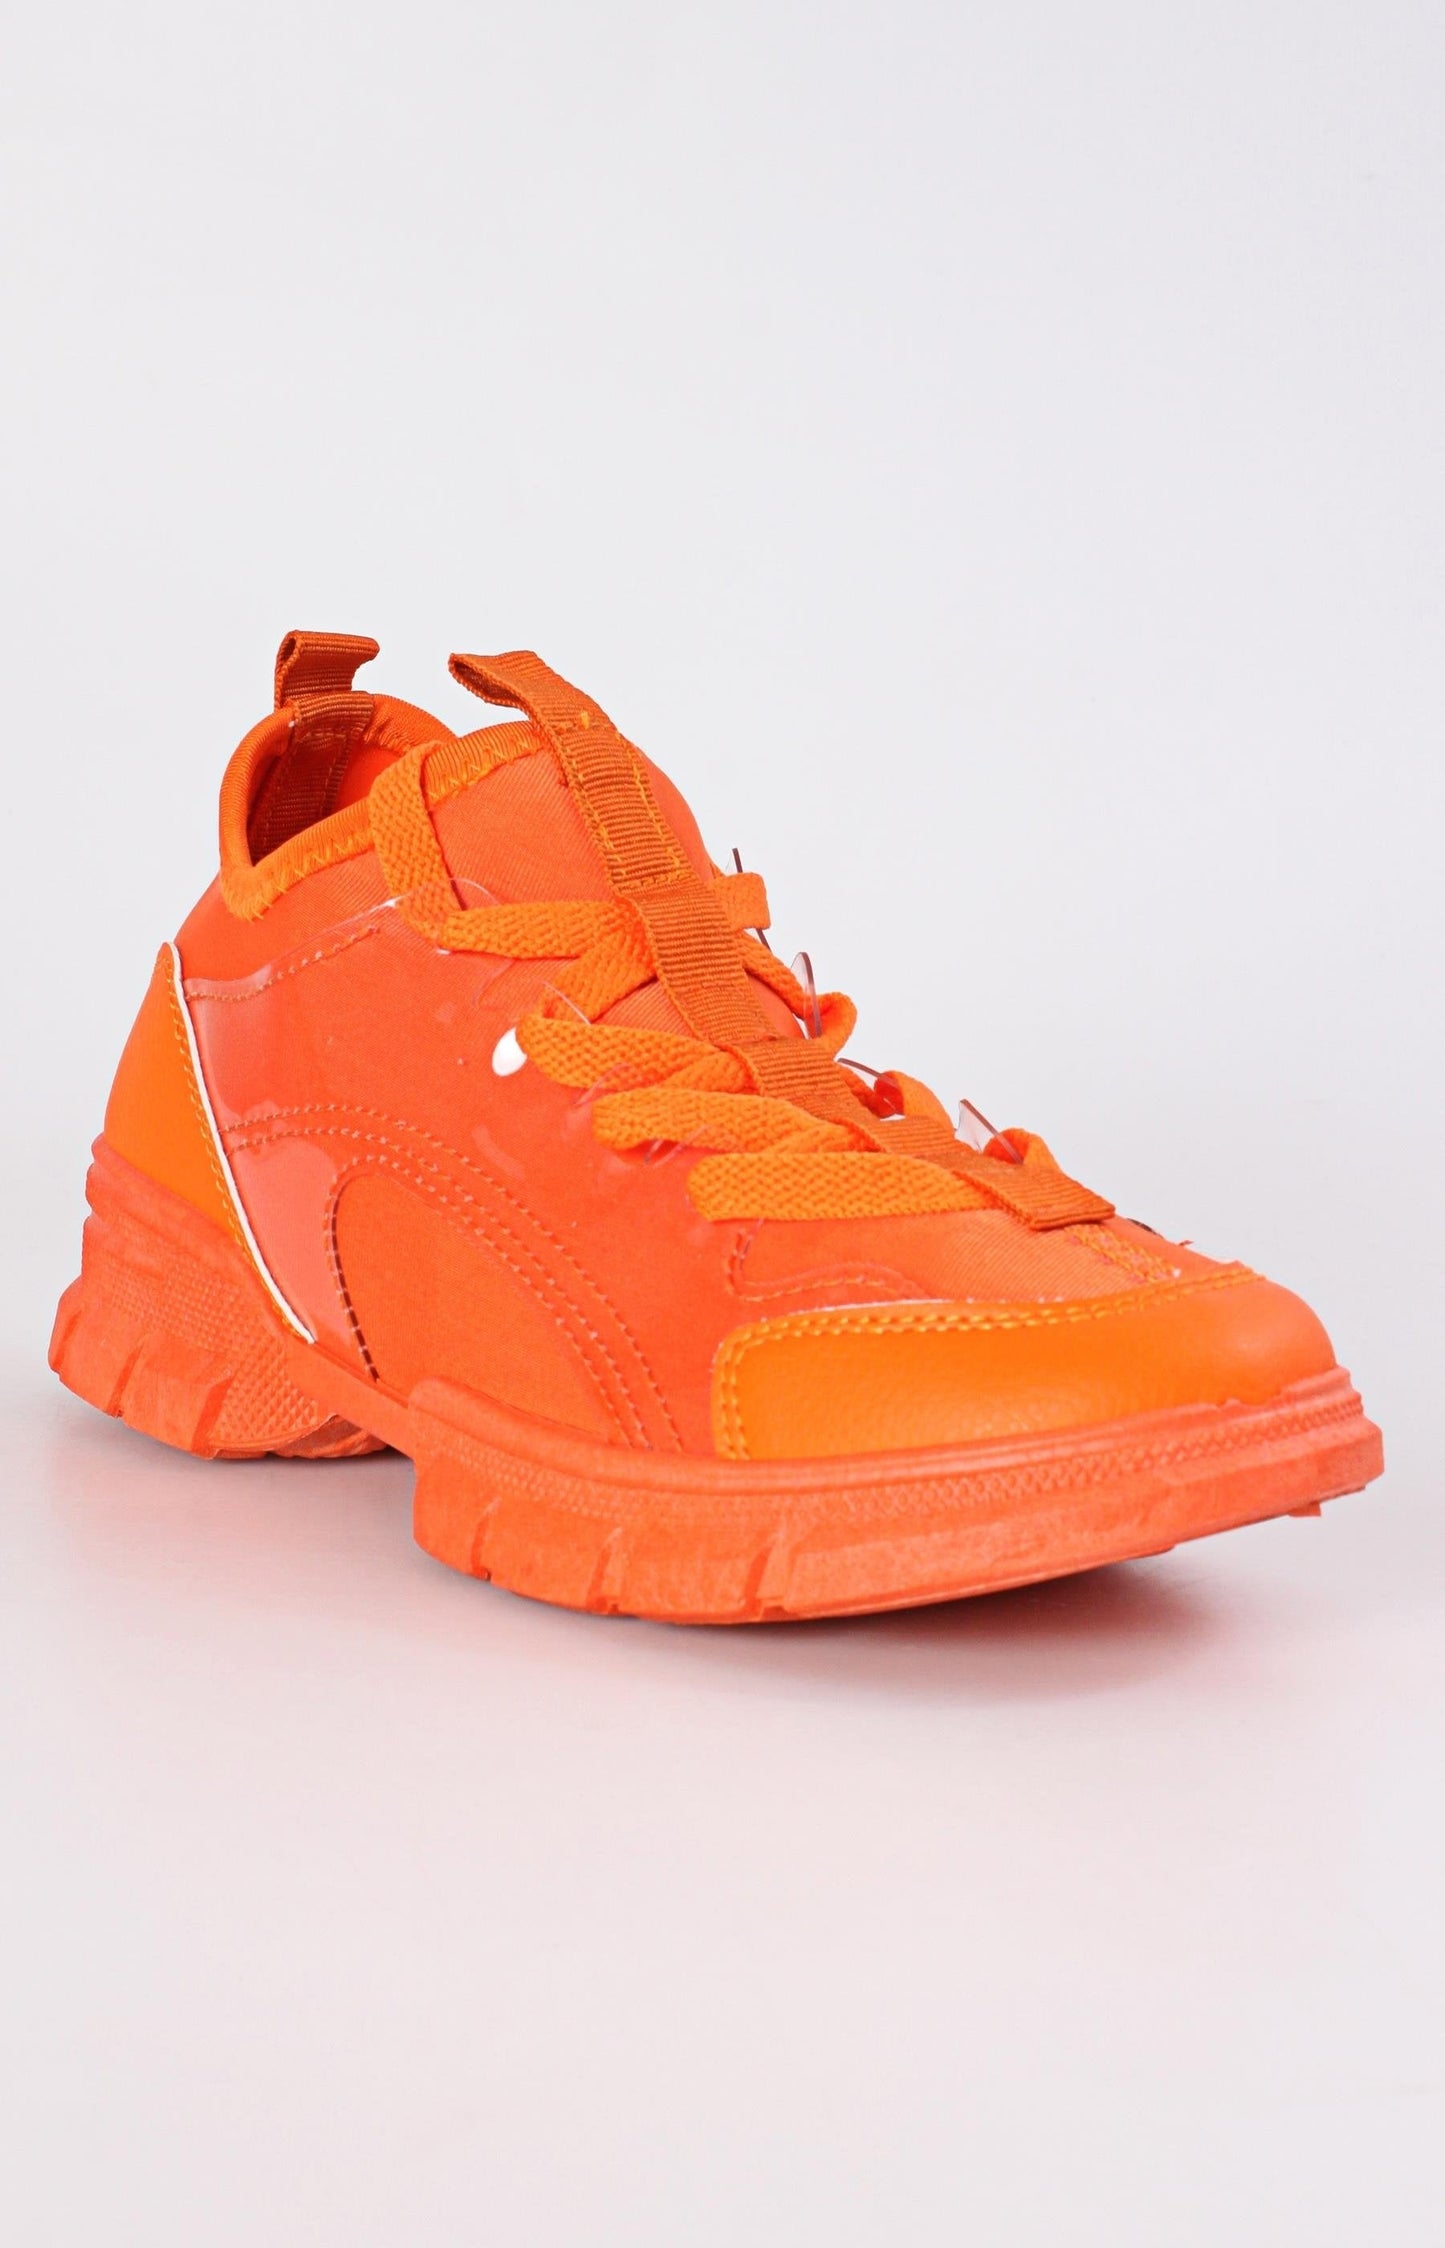 Ladies' Rush Bright Sneakers - Orange